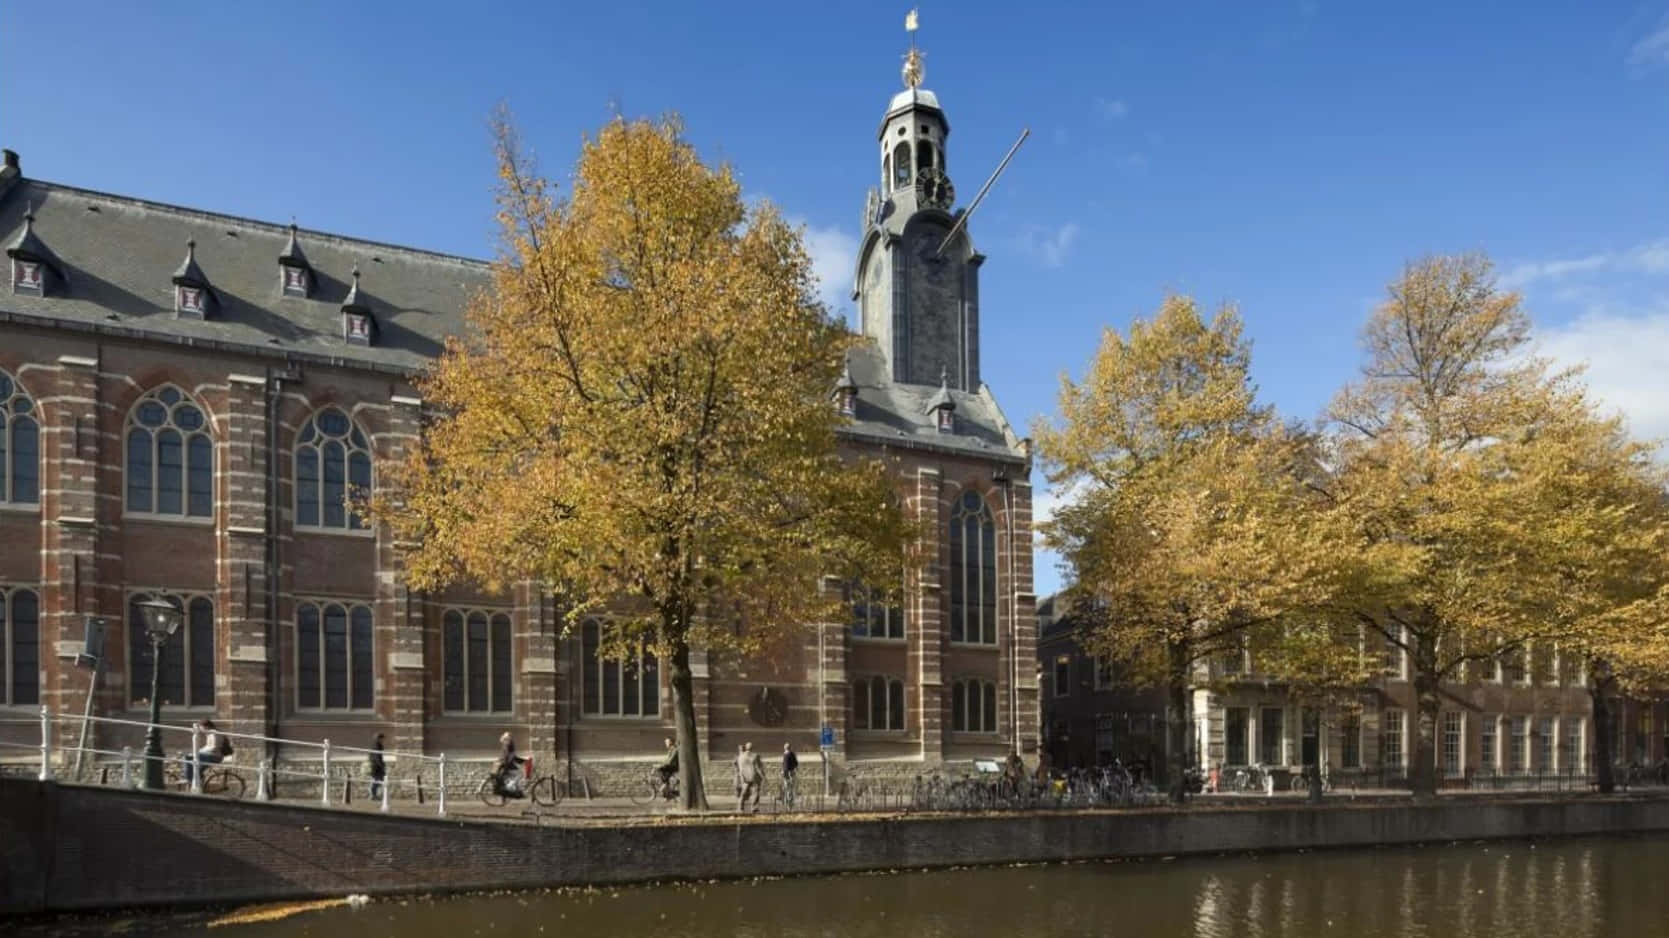 Autumnin Leiden Academy Building Wallpaper